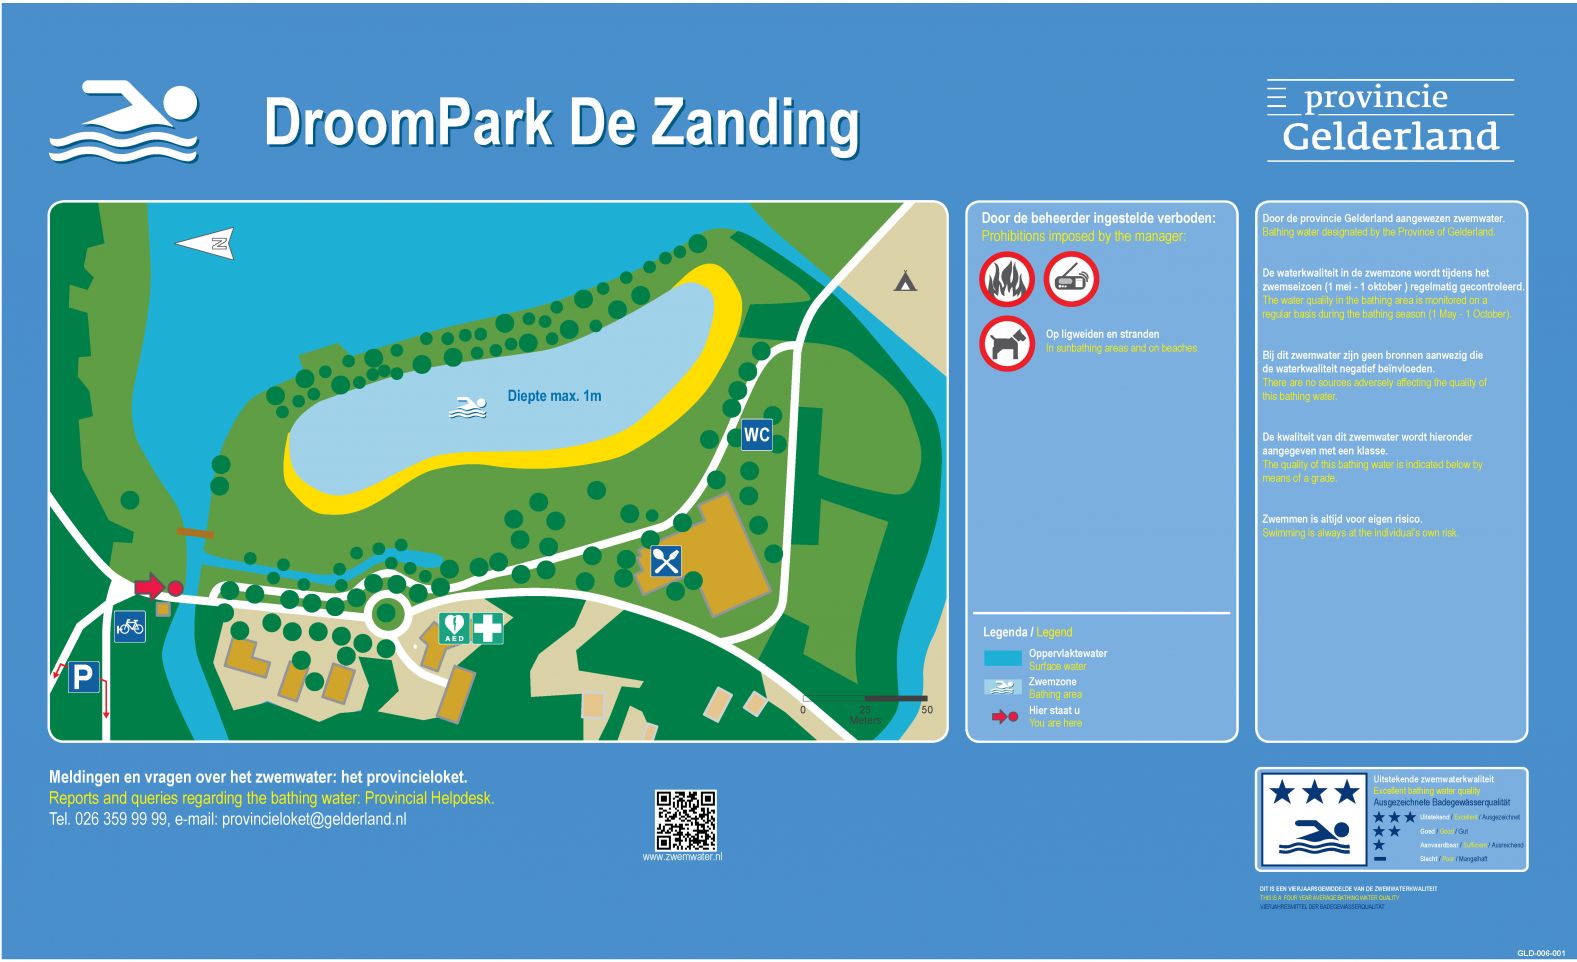 The information board at the swimming location Droompark De Zanding